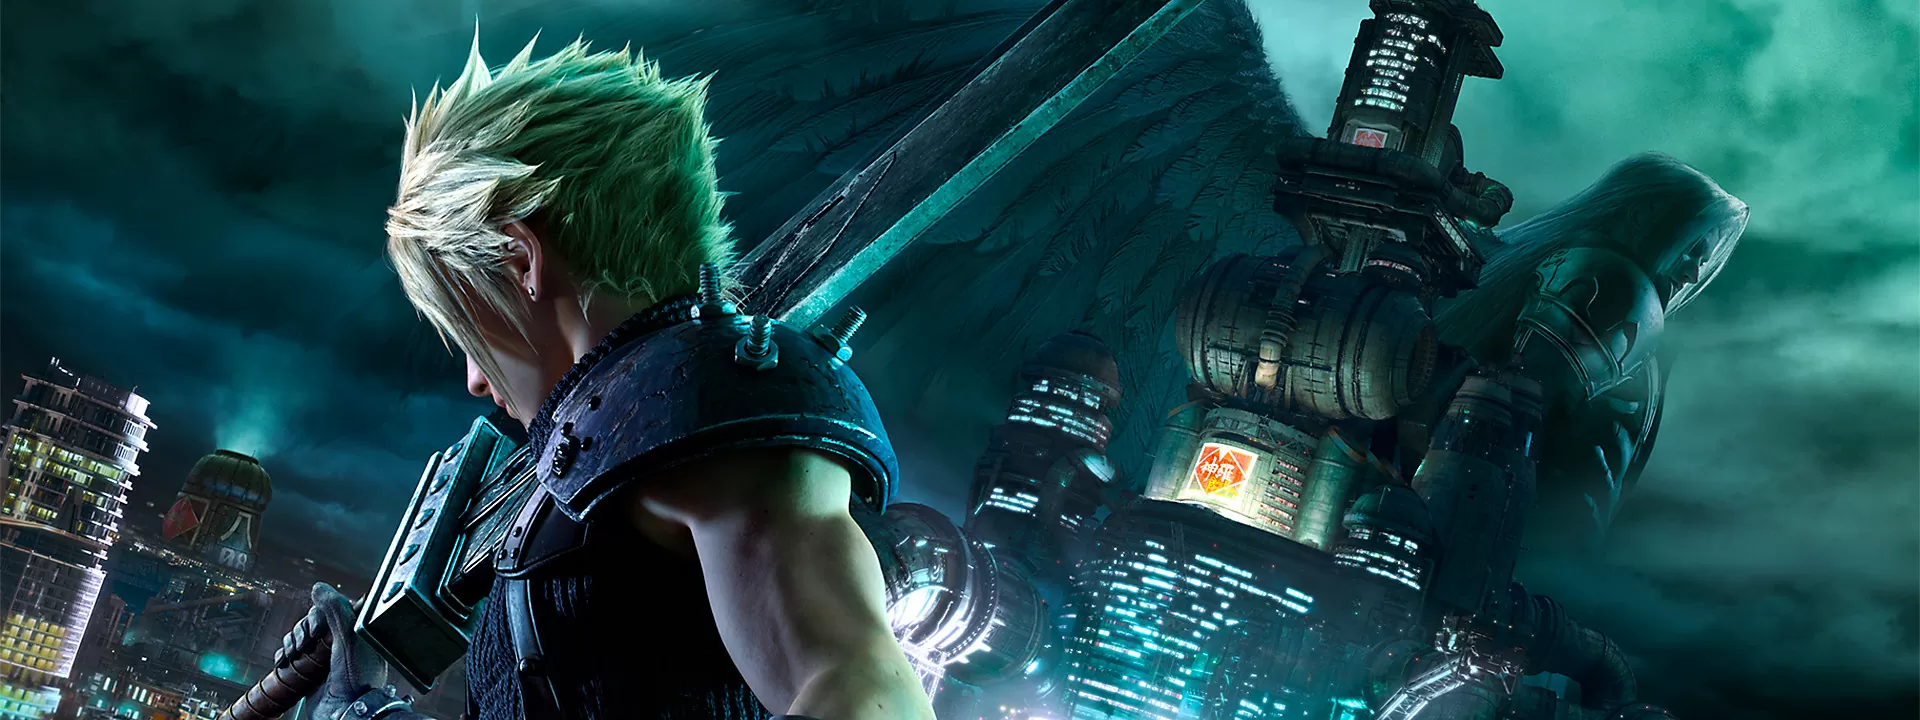 Final Fantasy VII Remake: spiegazione e analisi del finale